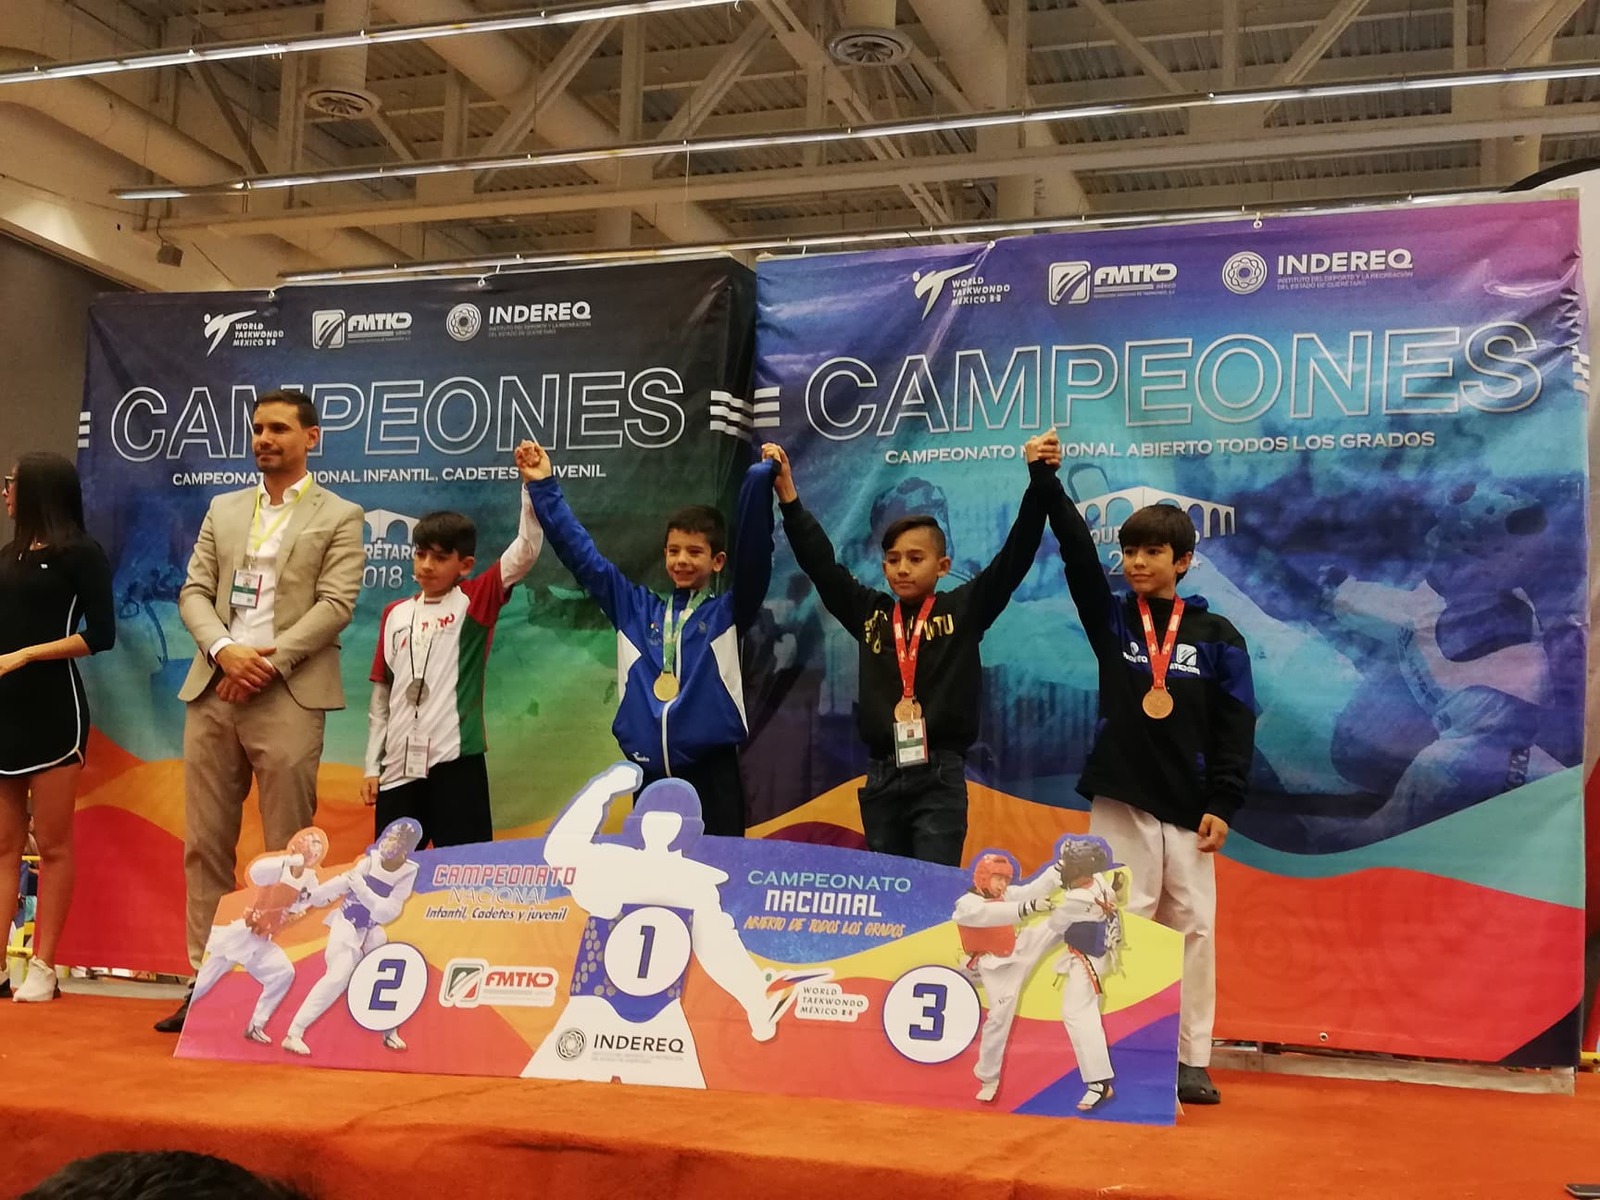 Con apenas 9 años de edad, el lagunero Iván Richards Gaytán, derrotó a los favoritos en la competencia celebrada en Querétaro.